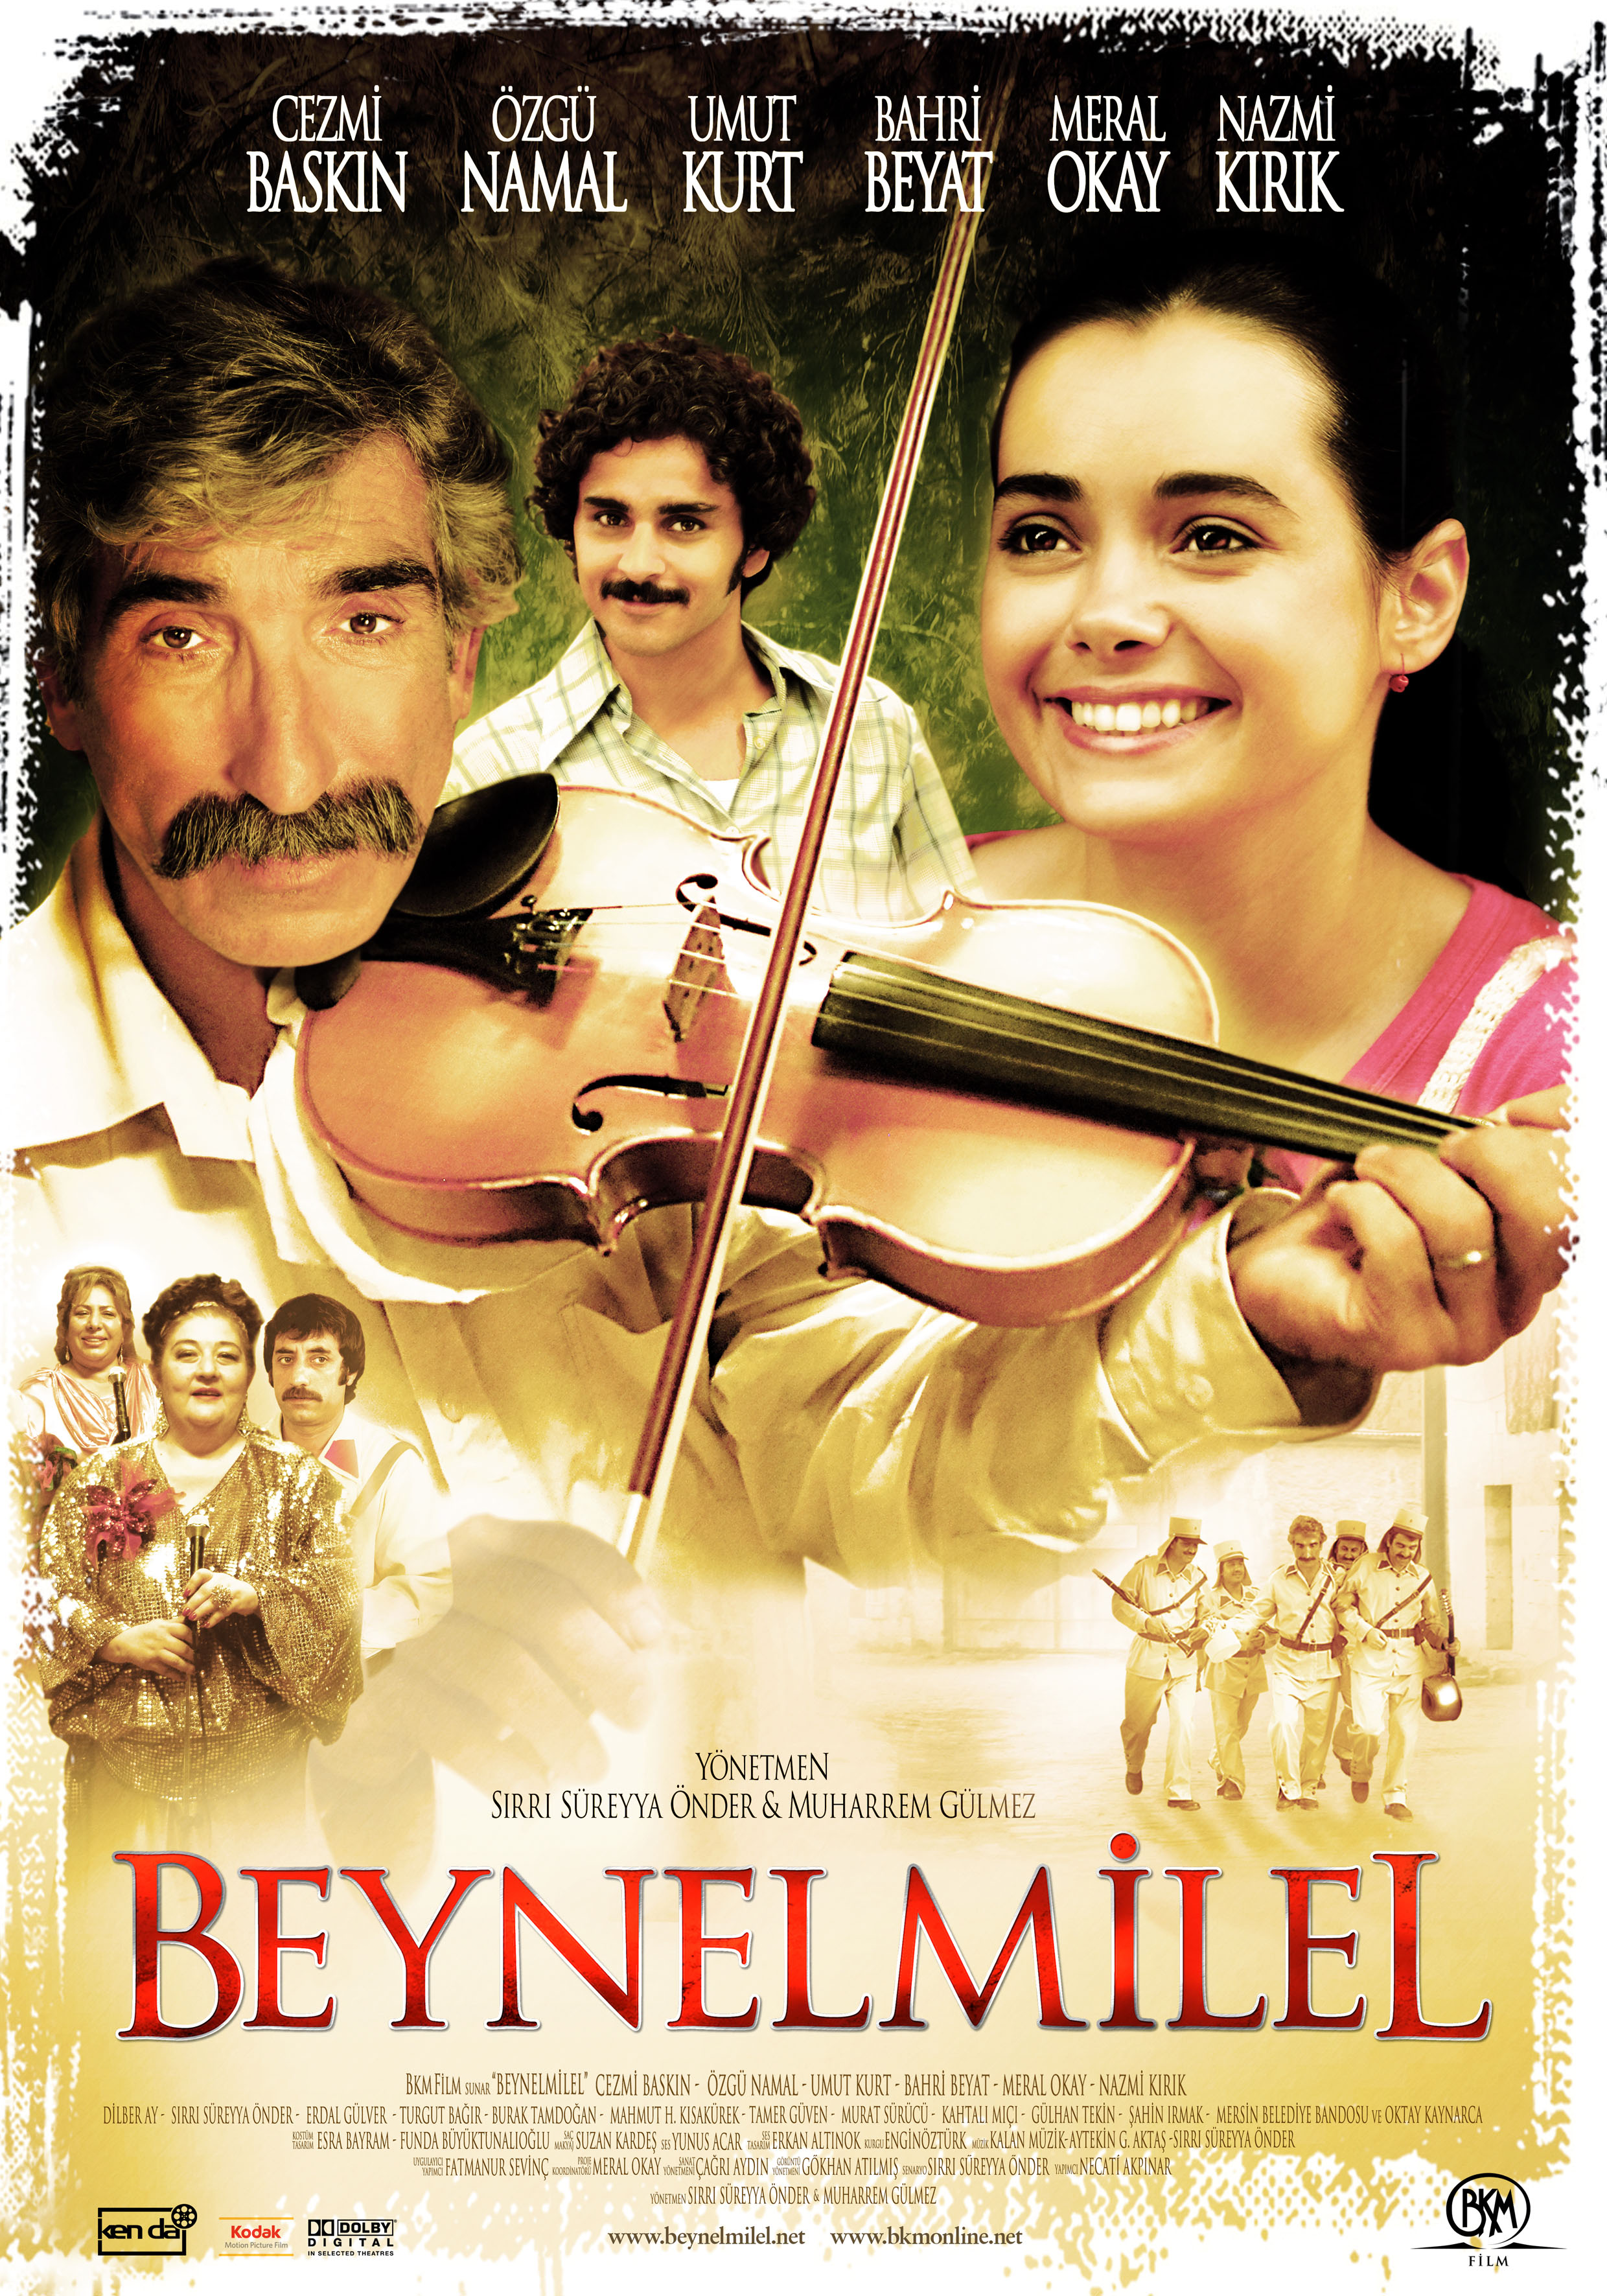 Beynelmilel (The International) 